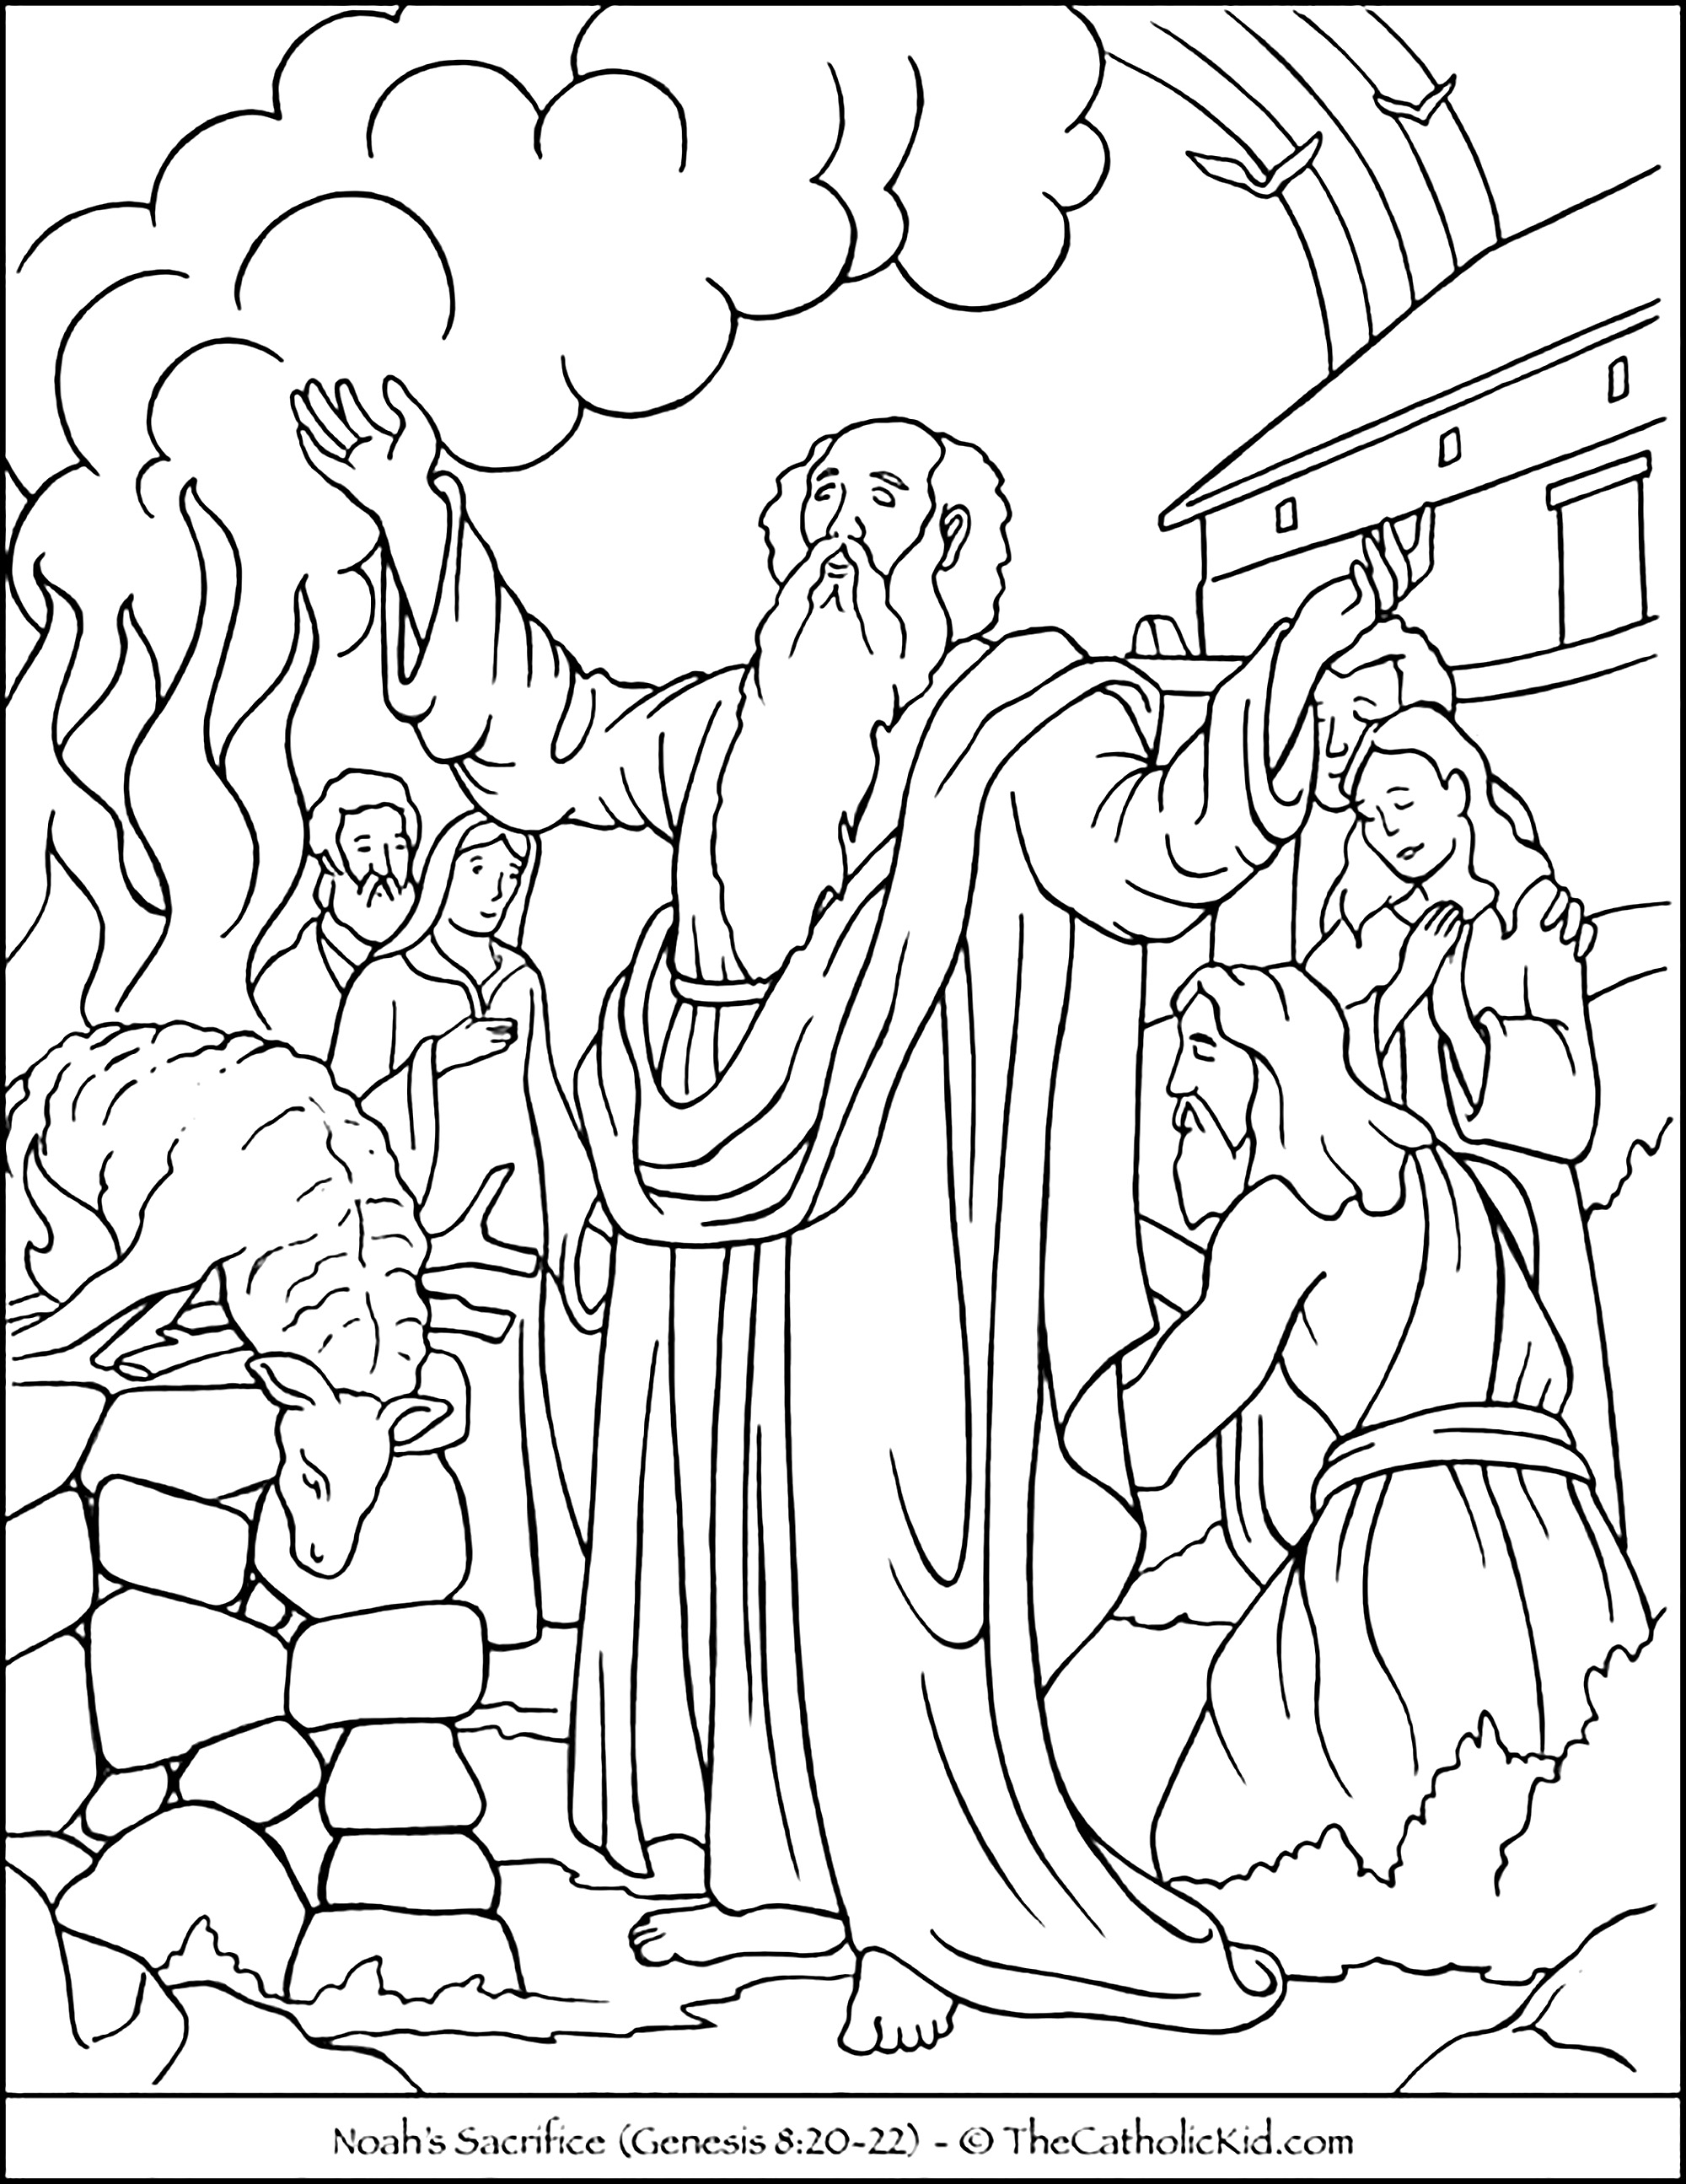 El sacrificio de Noé. Noé, su esposa y otros celebrando el sacrificio de un carnero.